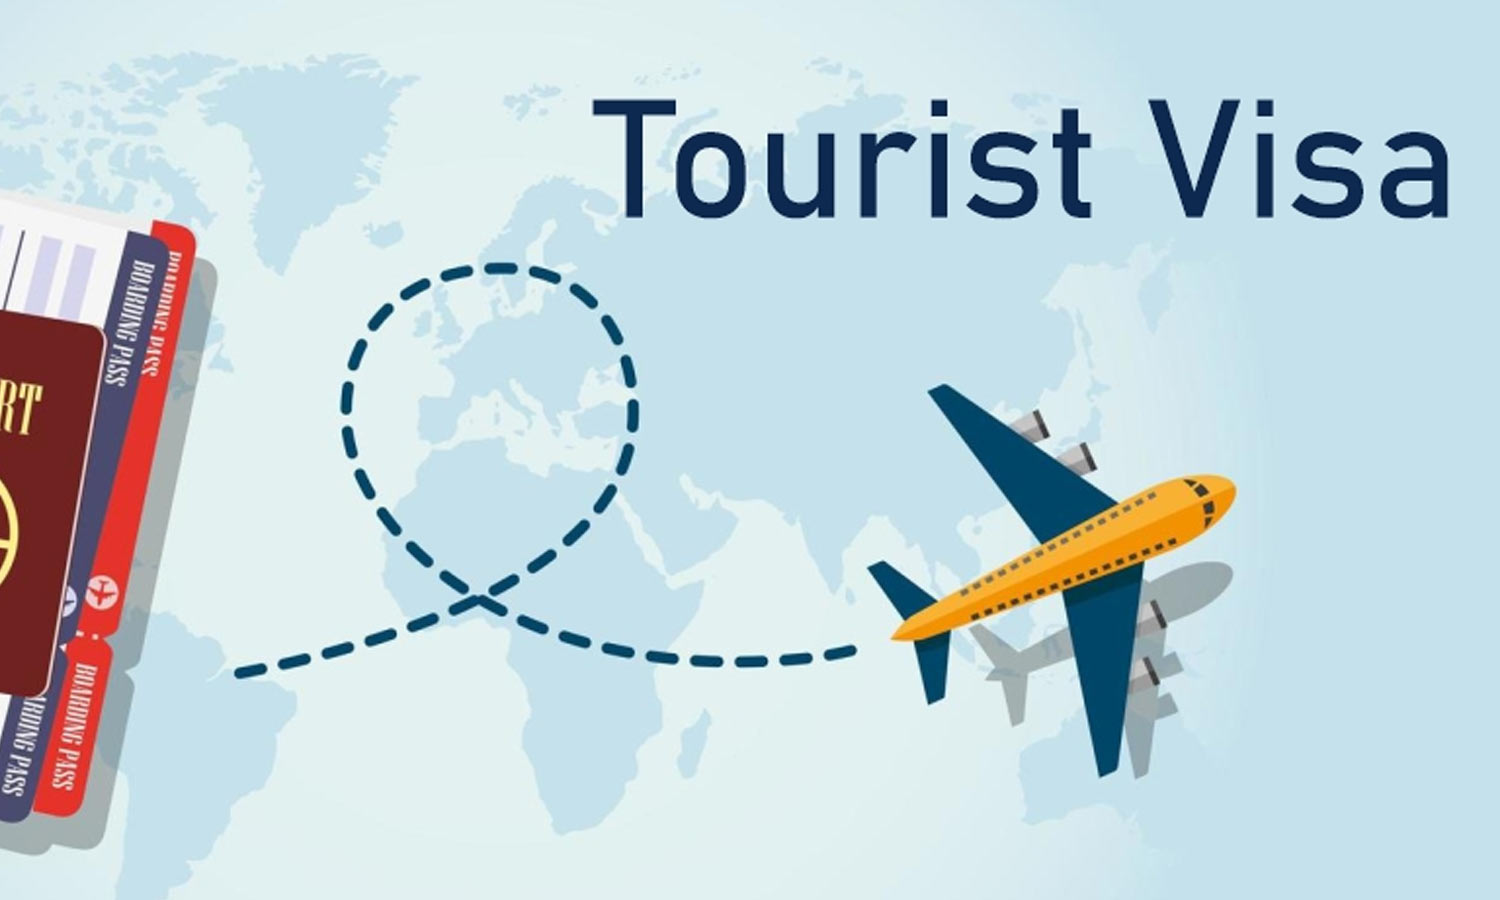 Pemegang visa turis diizinkan untuk bekerja di Amerika Serikat